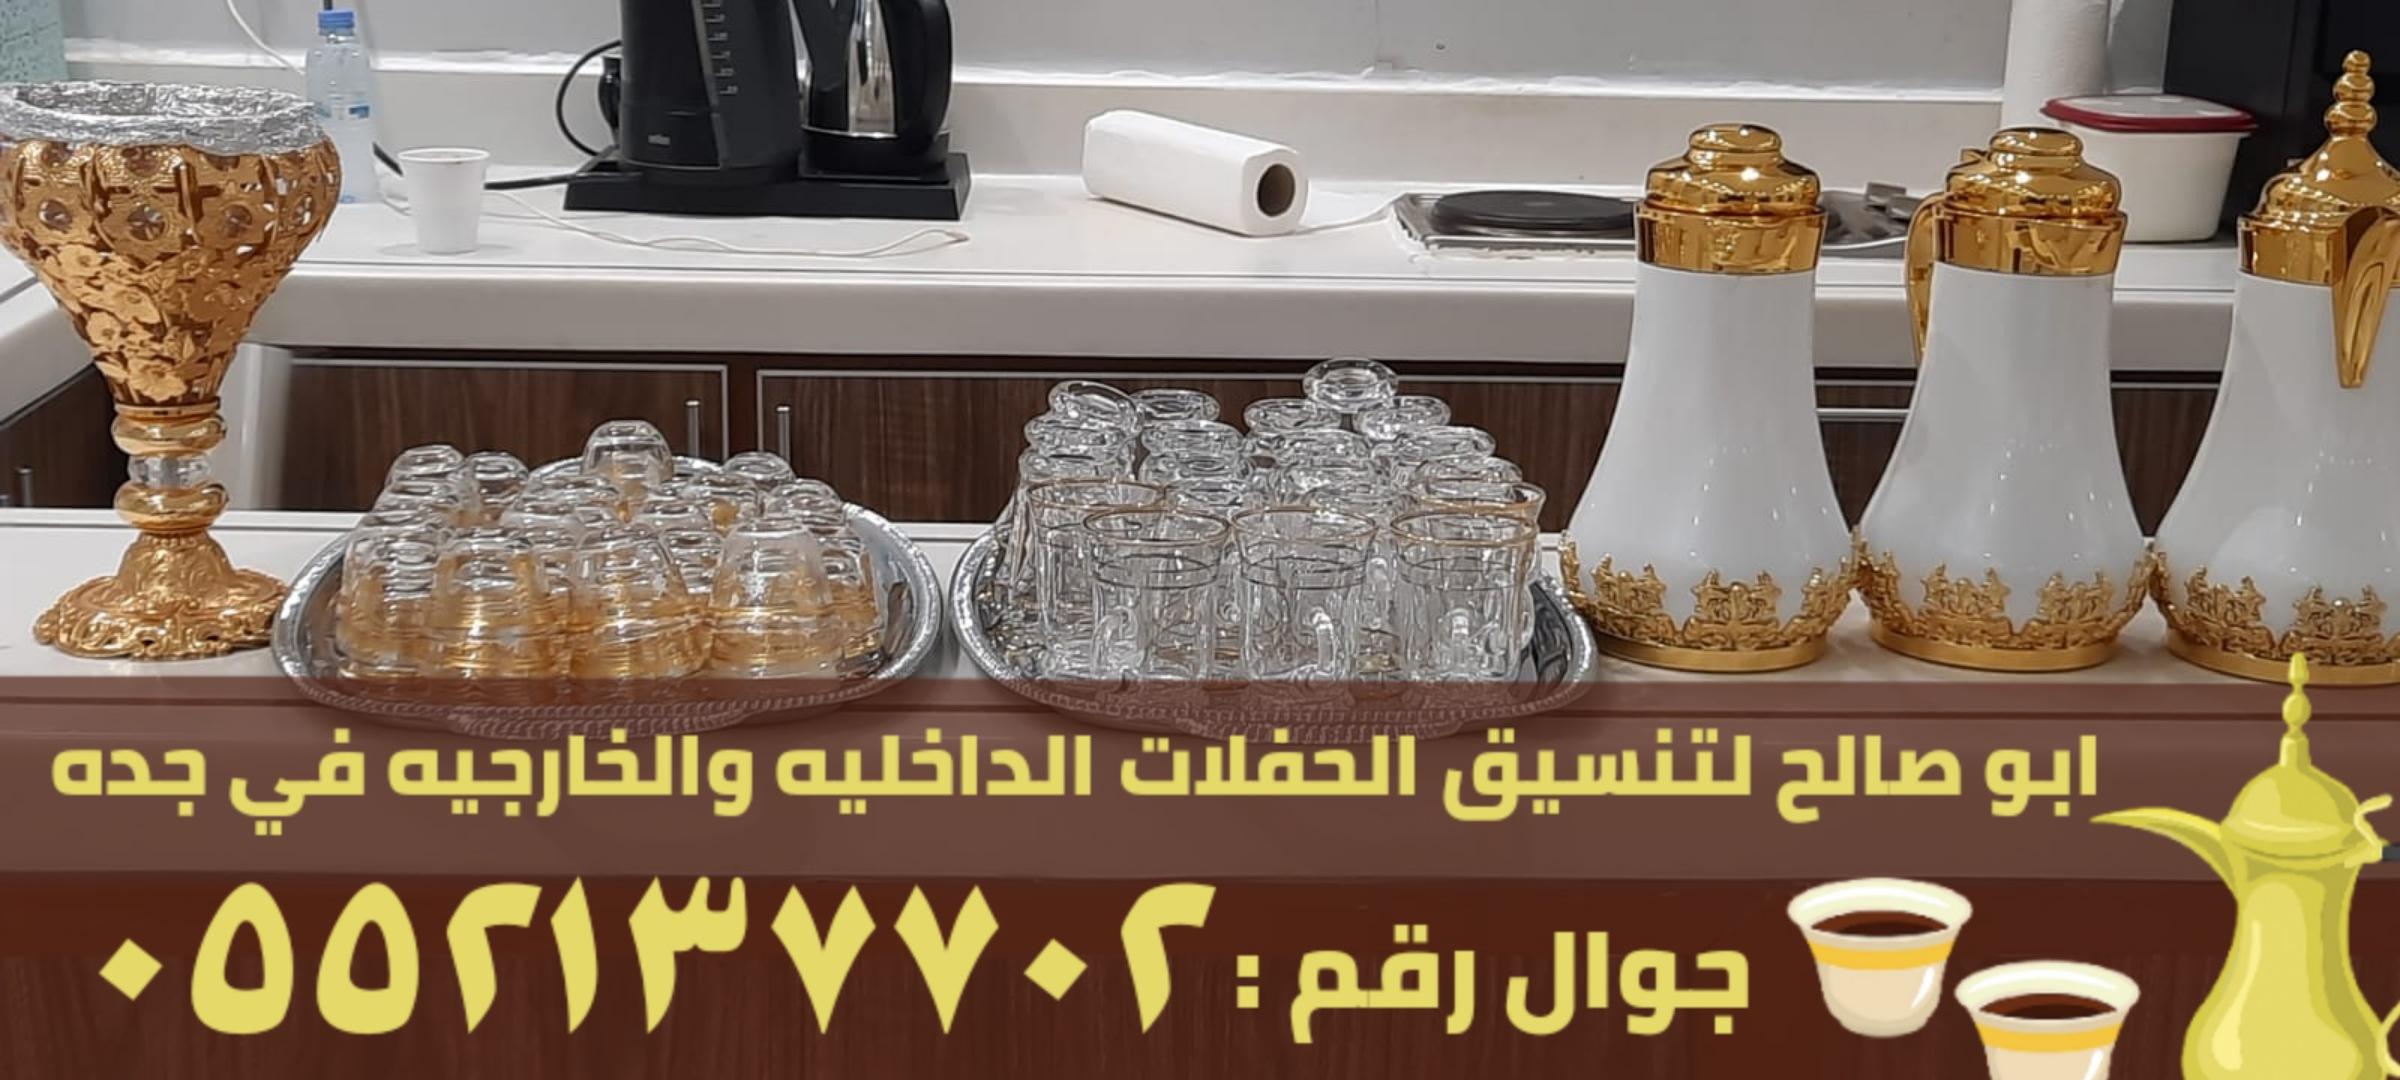 قهوجيات و صبابين قهوة في جدة, 0552137702 331379398